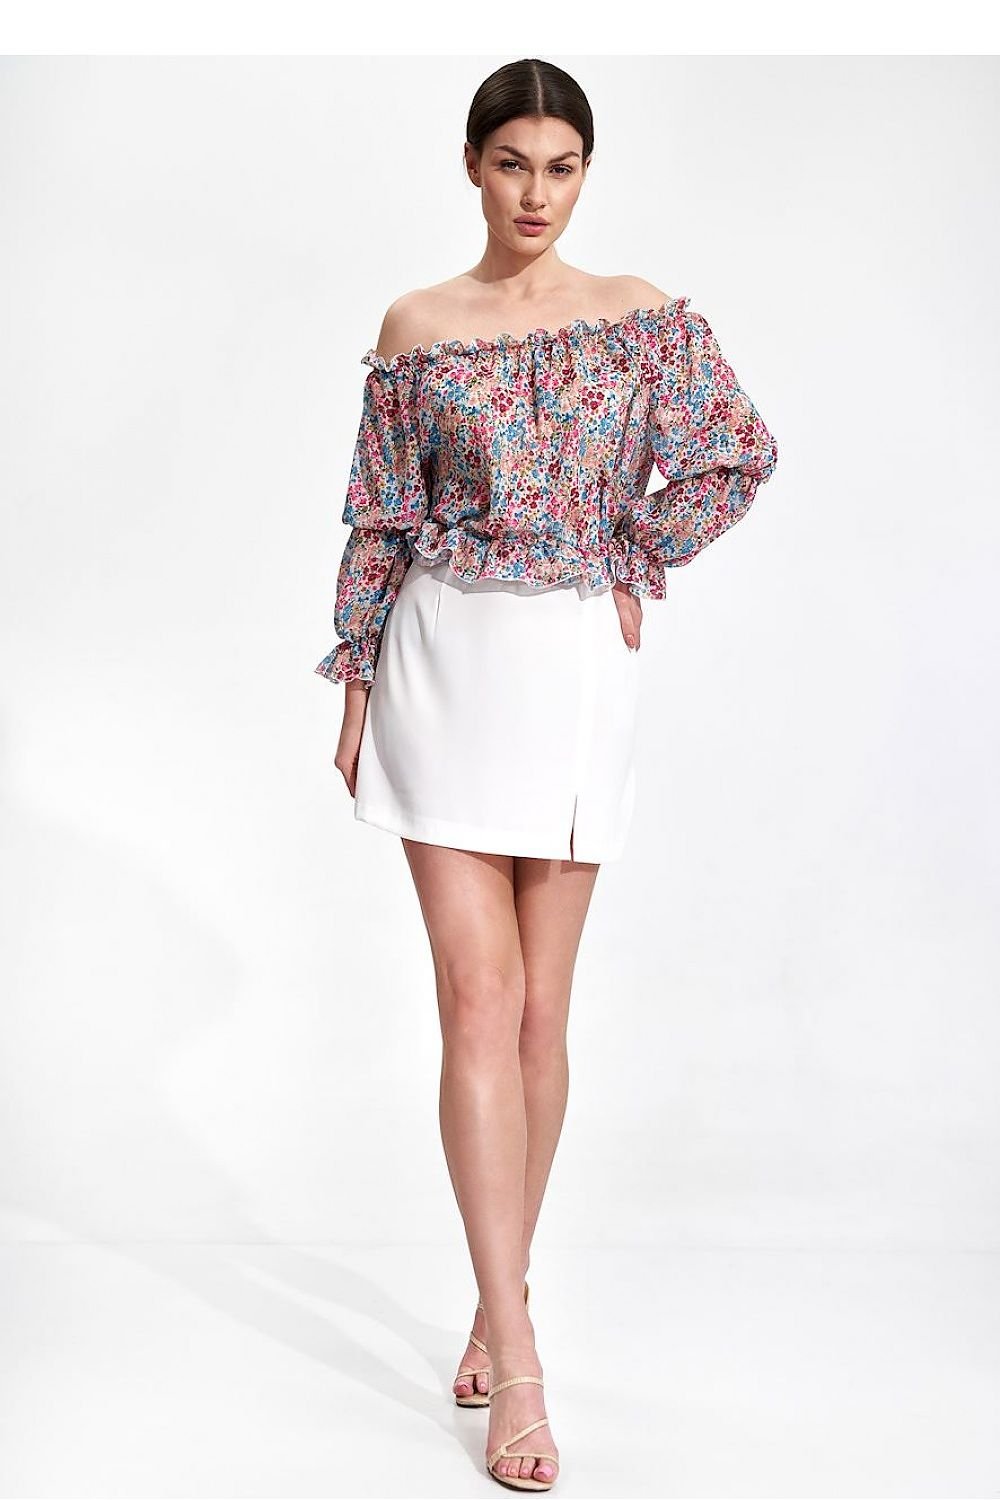 Jupe blanche mini-jupe fendue droite élégante pour femmes, style tendance et moderne, idéale pour sorties casual ou soirées.